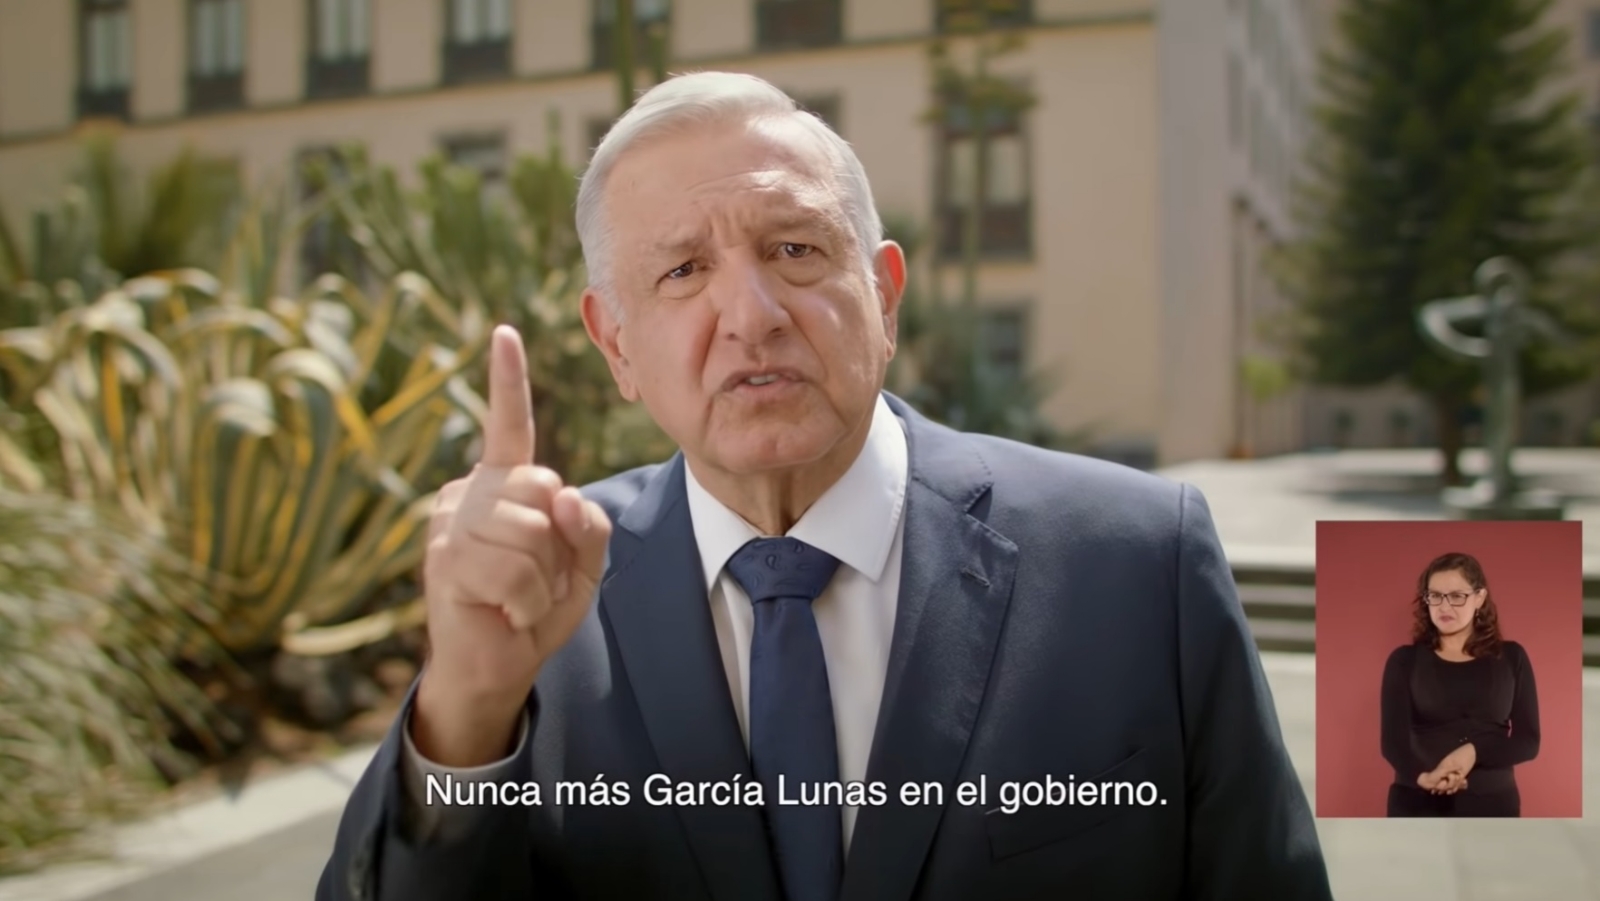 García Lunas, nunca más en el gobierno, dice AMLO en spot